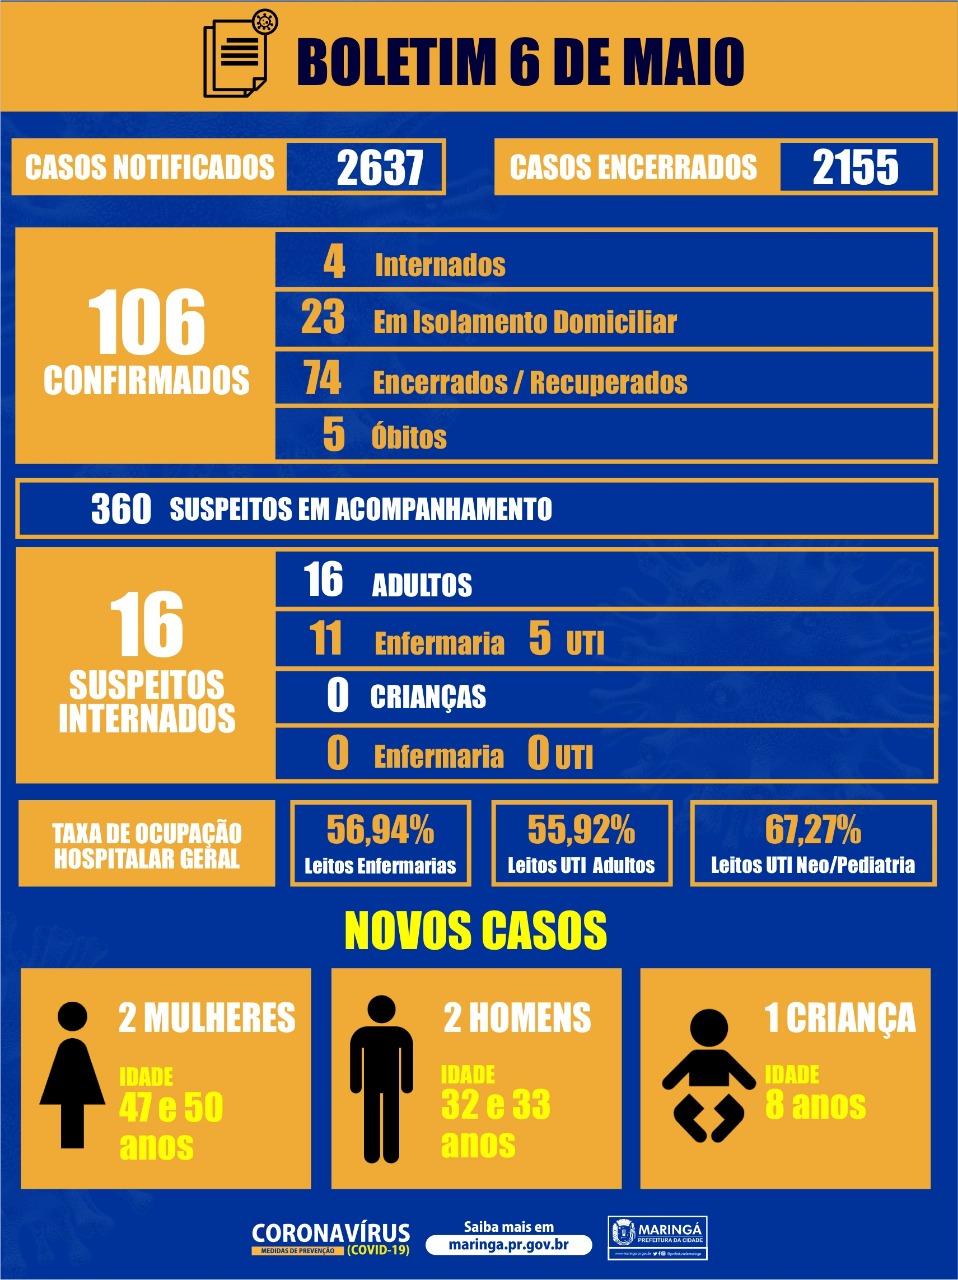 Coronavírus :Uma criança de 8 anos, 2 mulheres (47 e 50 anos) e 2 homens (32 e 33 anos)  novos casos de 06 de maio